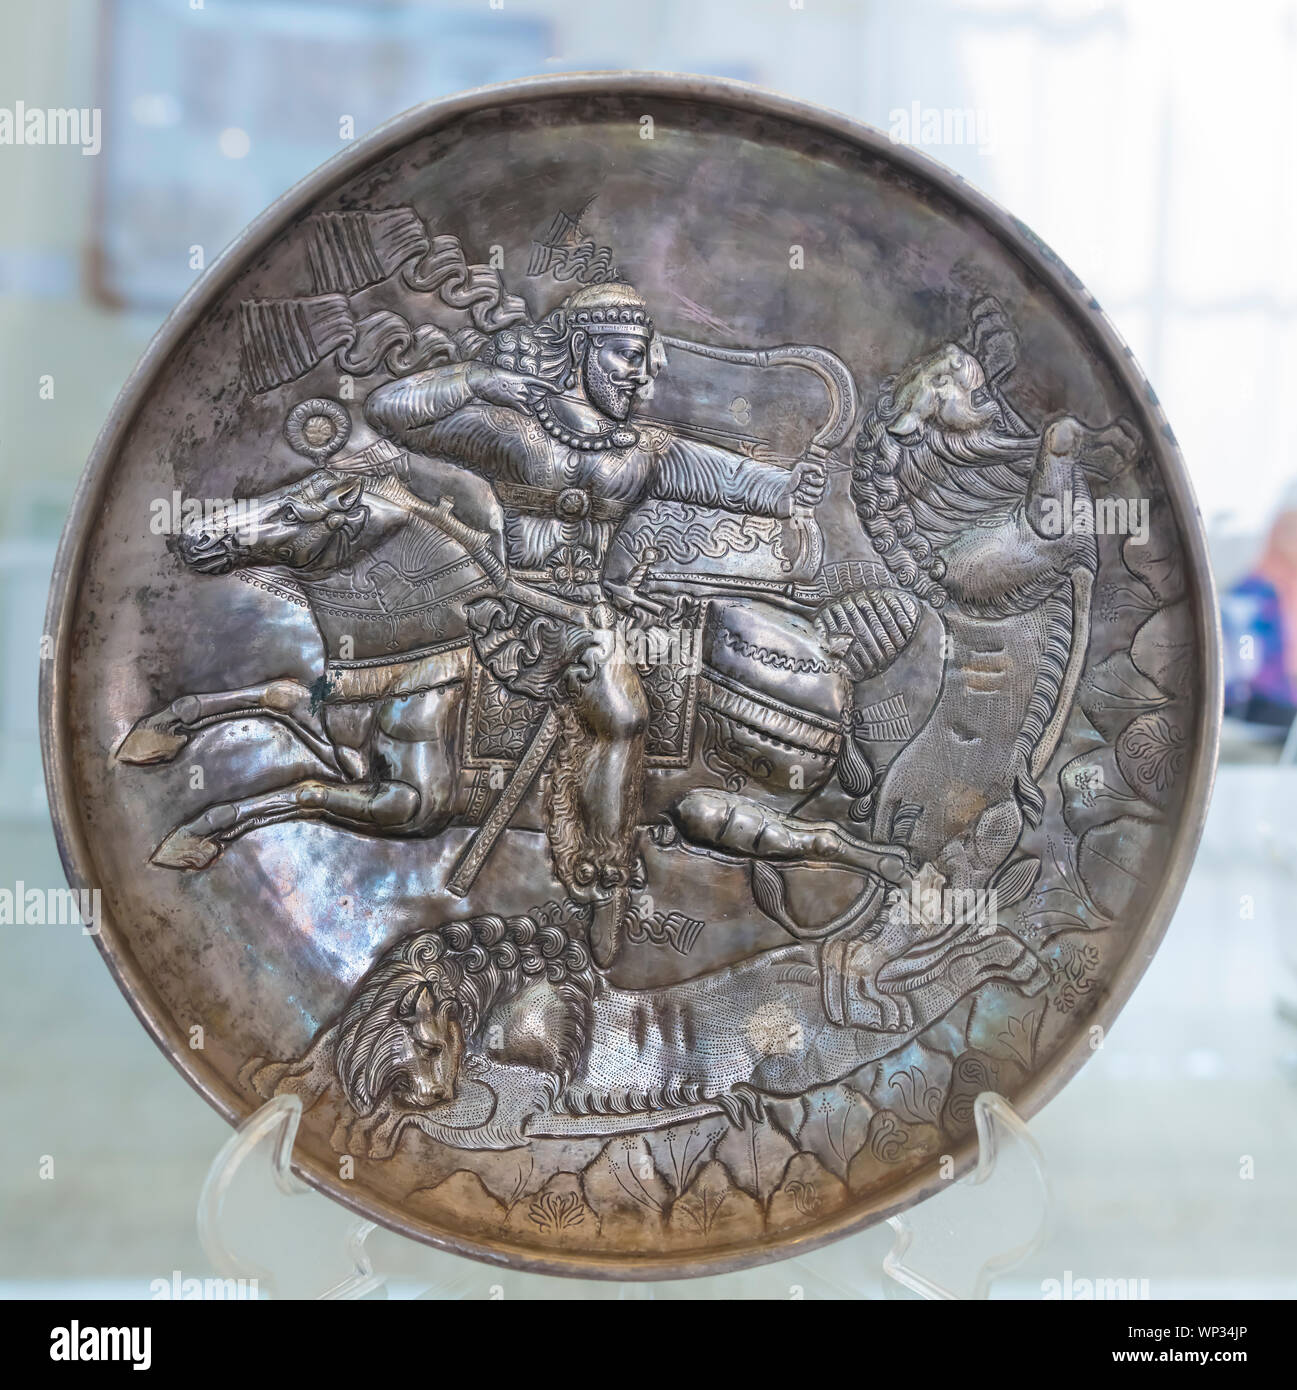 Sasanian silver plate, Mazandaran, Museum of Ancient Iran, National Museum of Iran, Tehran, Iran Stock Photo